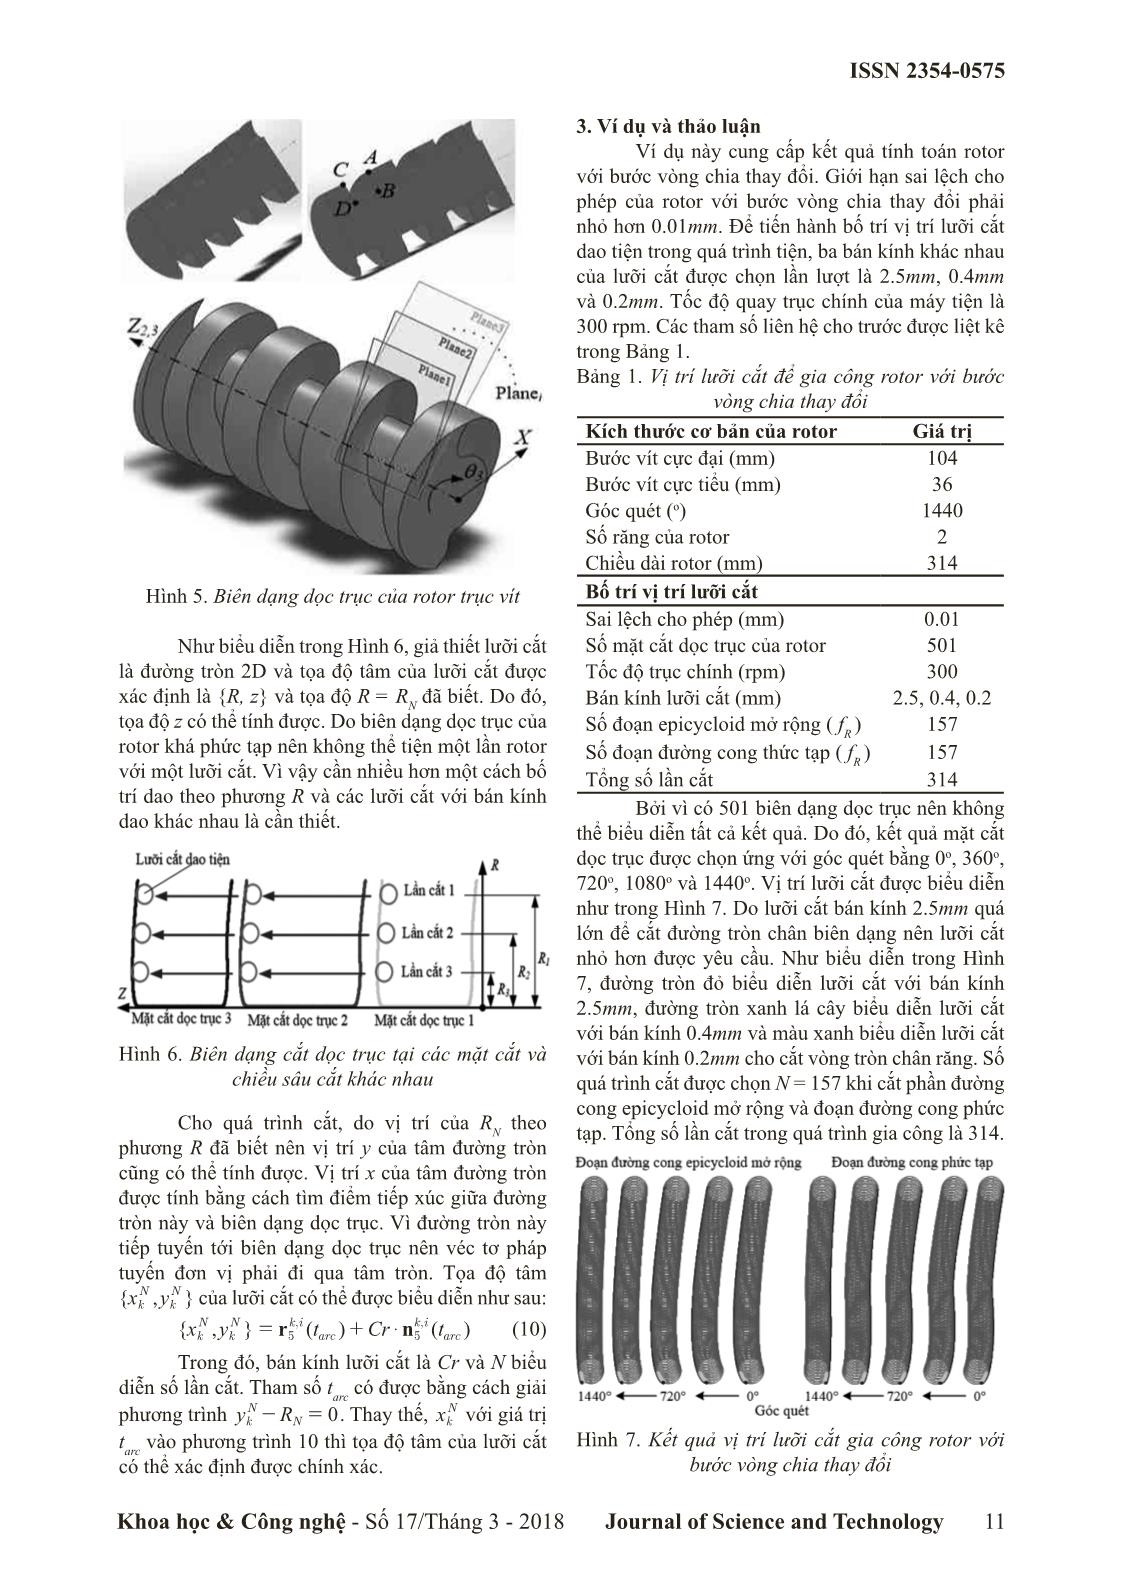 Nghiên cứu quá trình tiện rotor của bơm chân không trục vít có bước vòng chia thay đổi trên máy tiện CNC trang 4